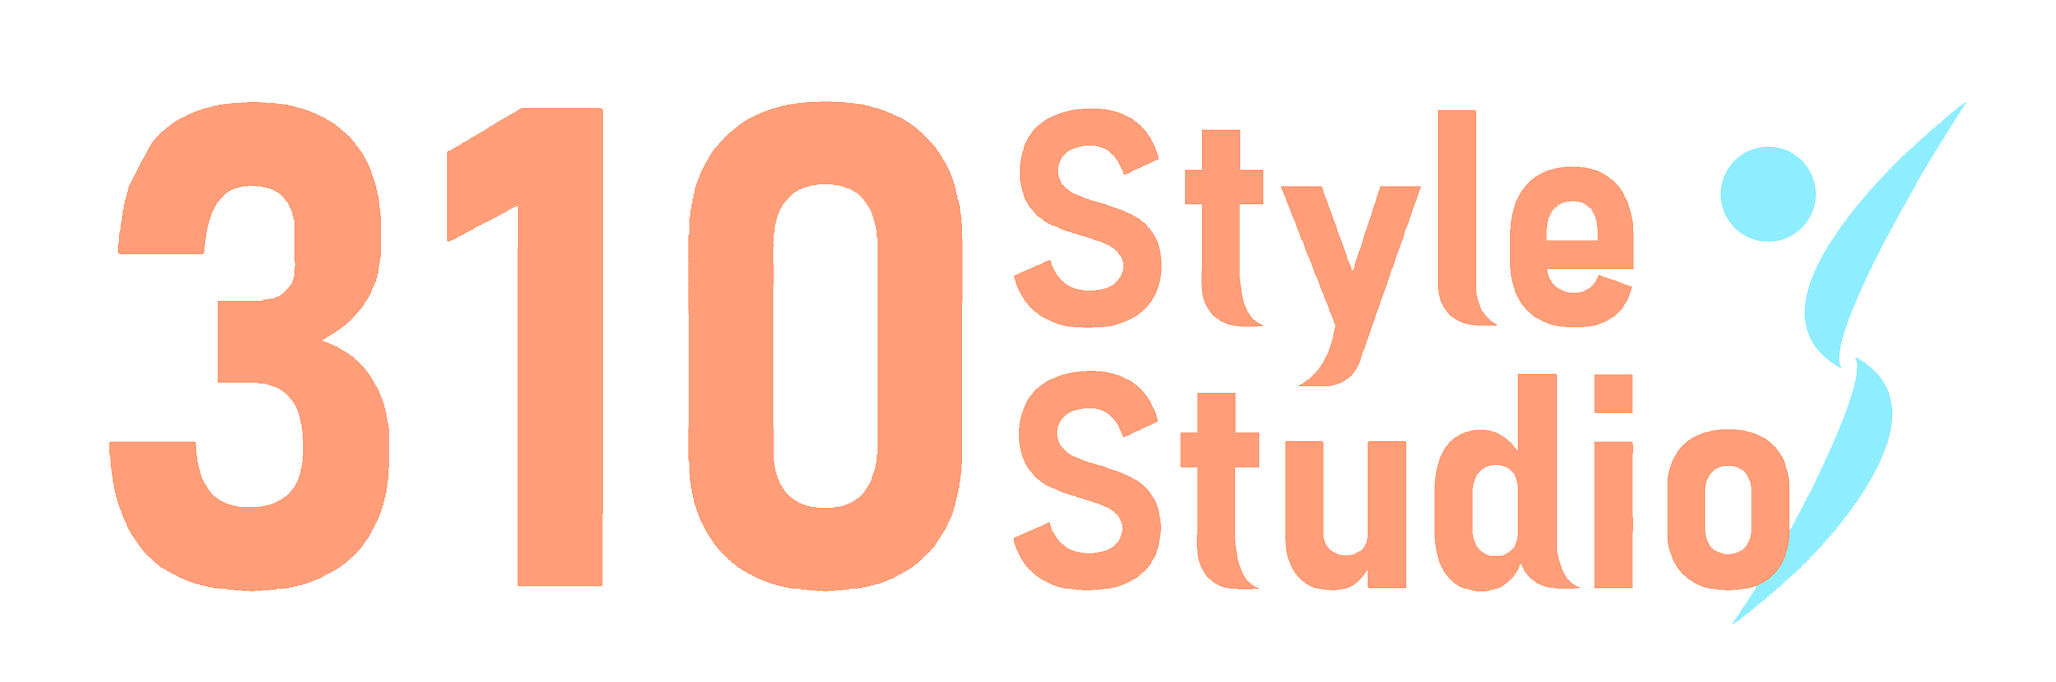 310Style Studio